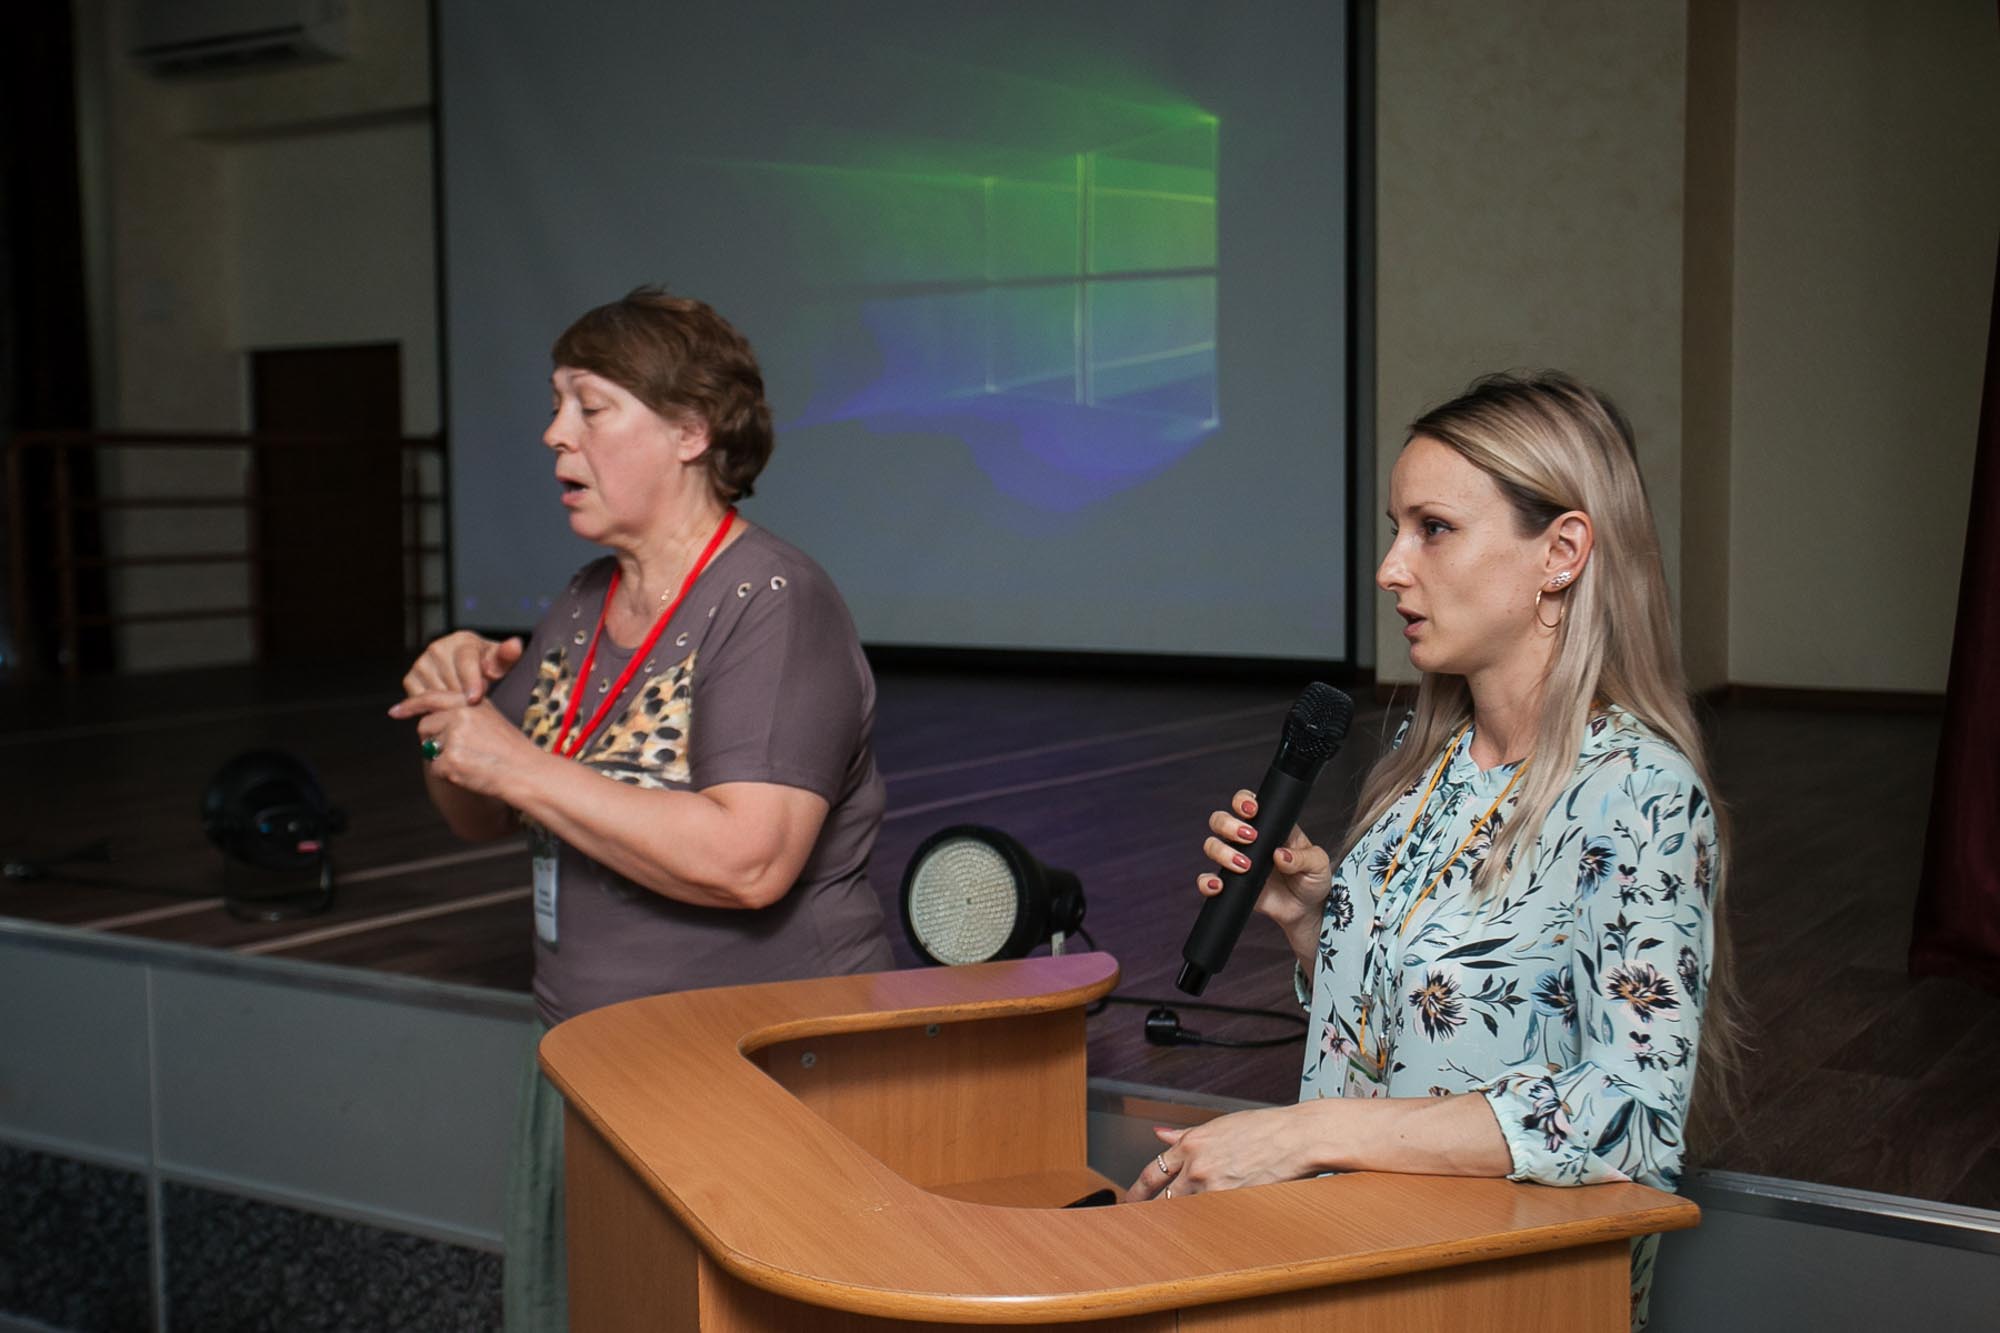 РУМЦ Мининского университета организовал профориентационное мероприятие для лиц с инвалидностью и ограниченными возможностями здоровья 